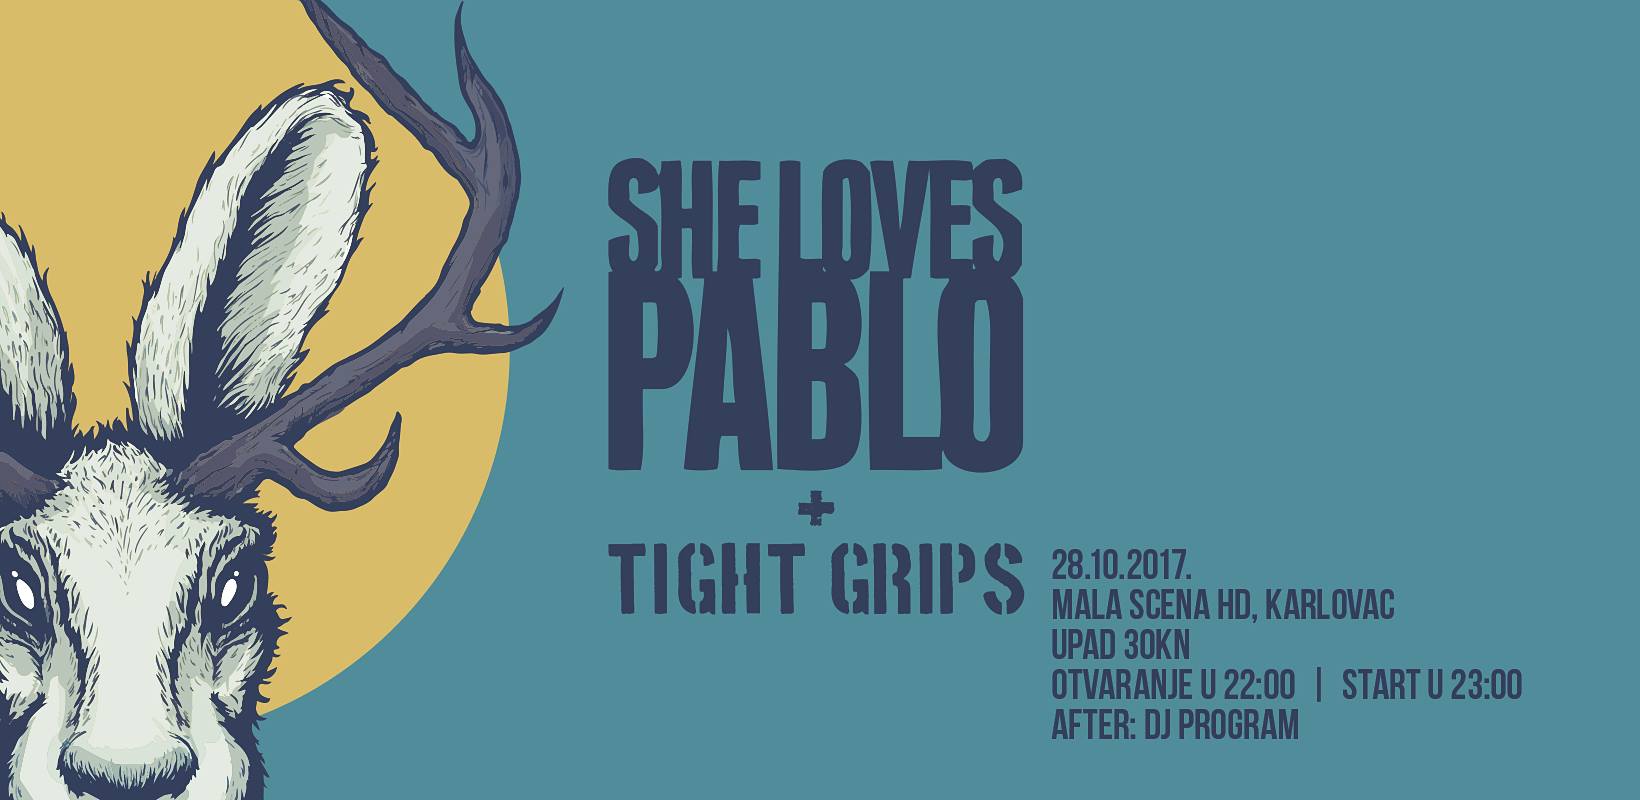 F-alter w. SHE LOVES PABLO + Tight Grips 28.10.2017. Malascena HD